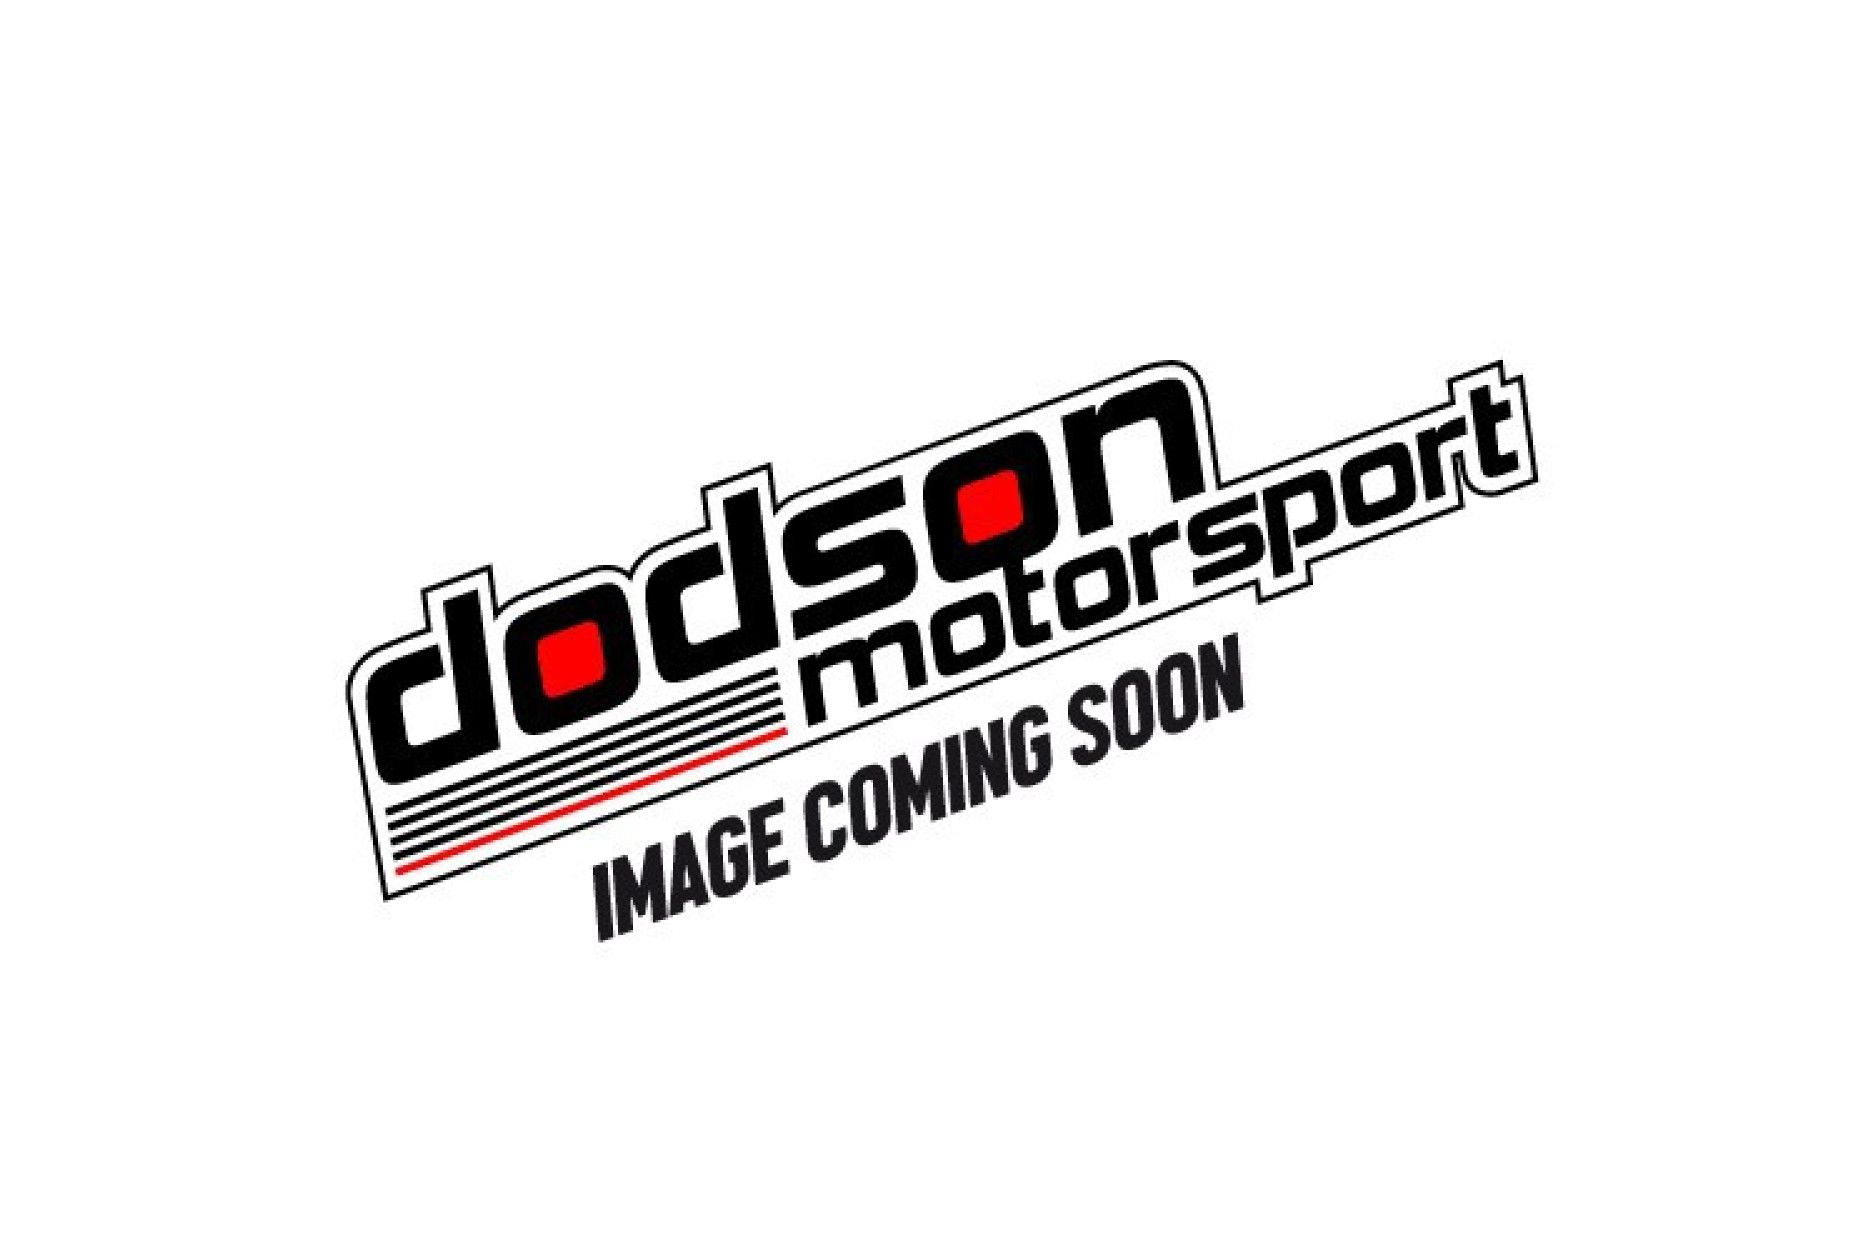 Dodson Hochleistungs Differentialöl (1 Liter ) Nissan GTR R35